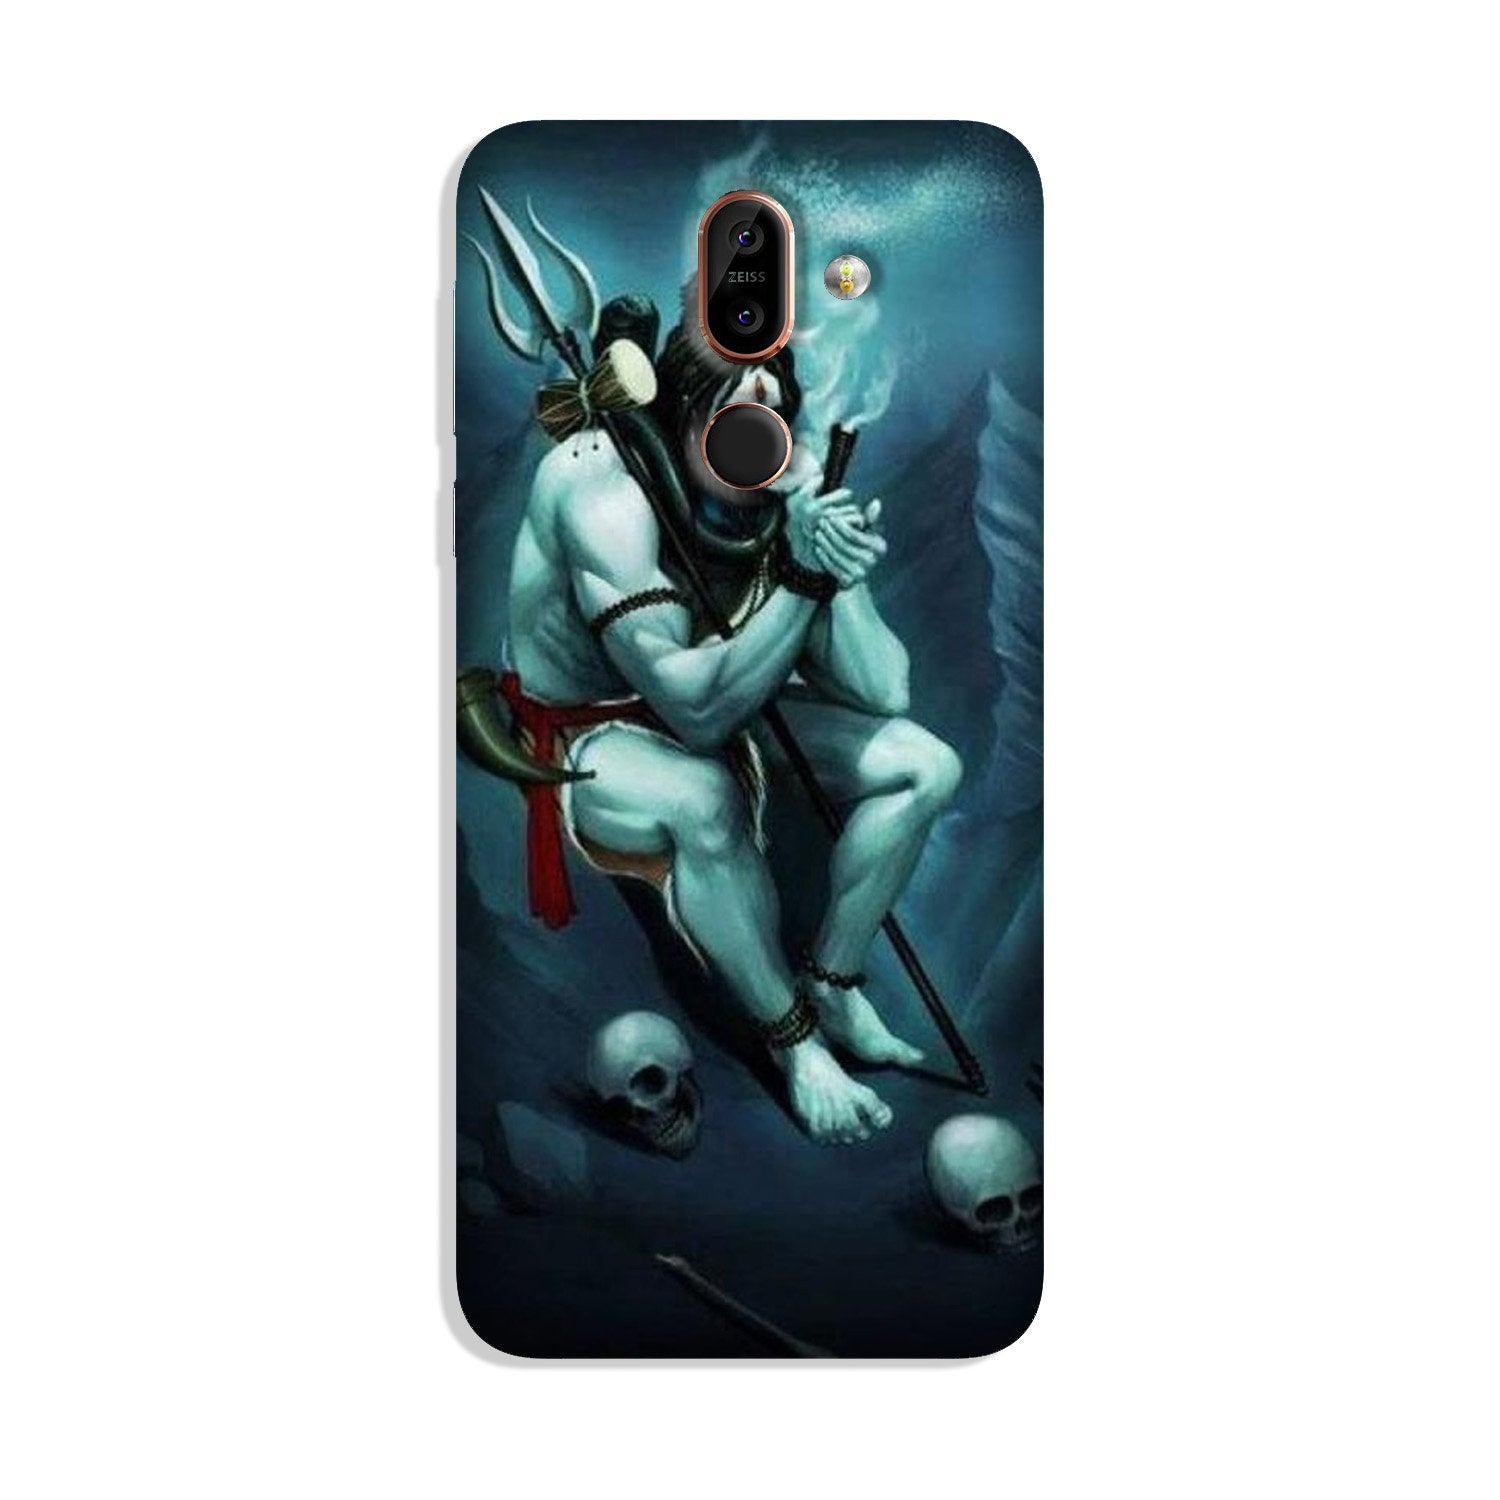 Lord Shiva Mahakal2 Case for Nokia 8.1